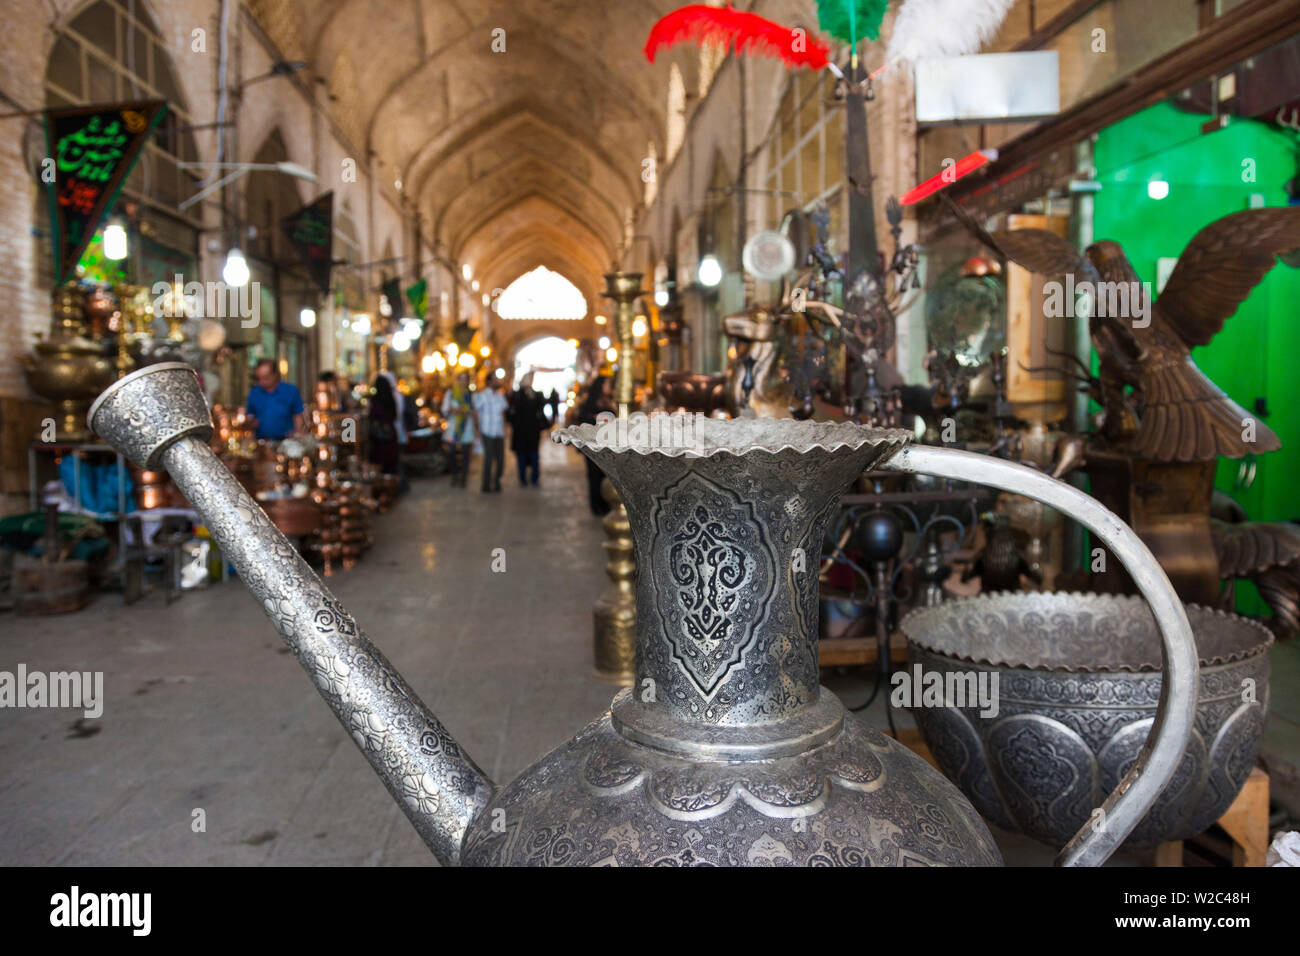 Iran, Central Iran, Esfahan, Bazar-e Bozorg market, metal pots Stock Photo